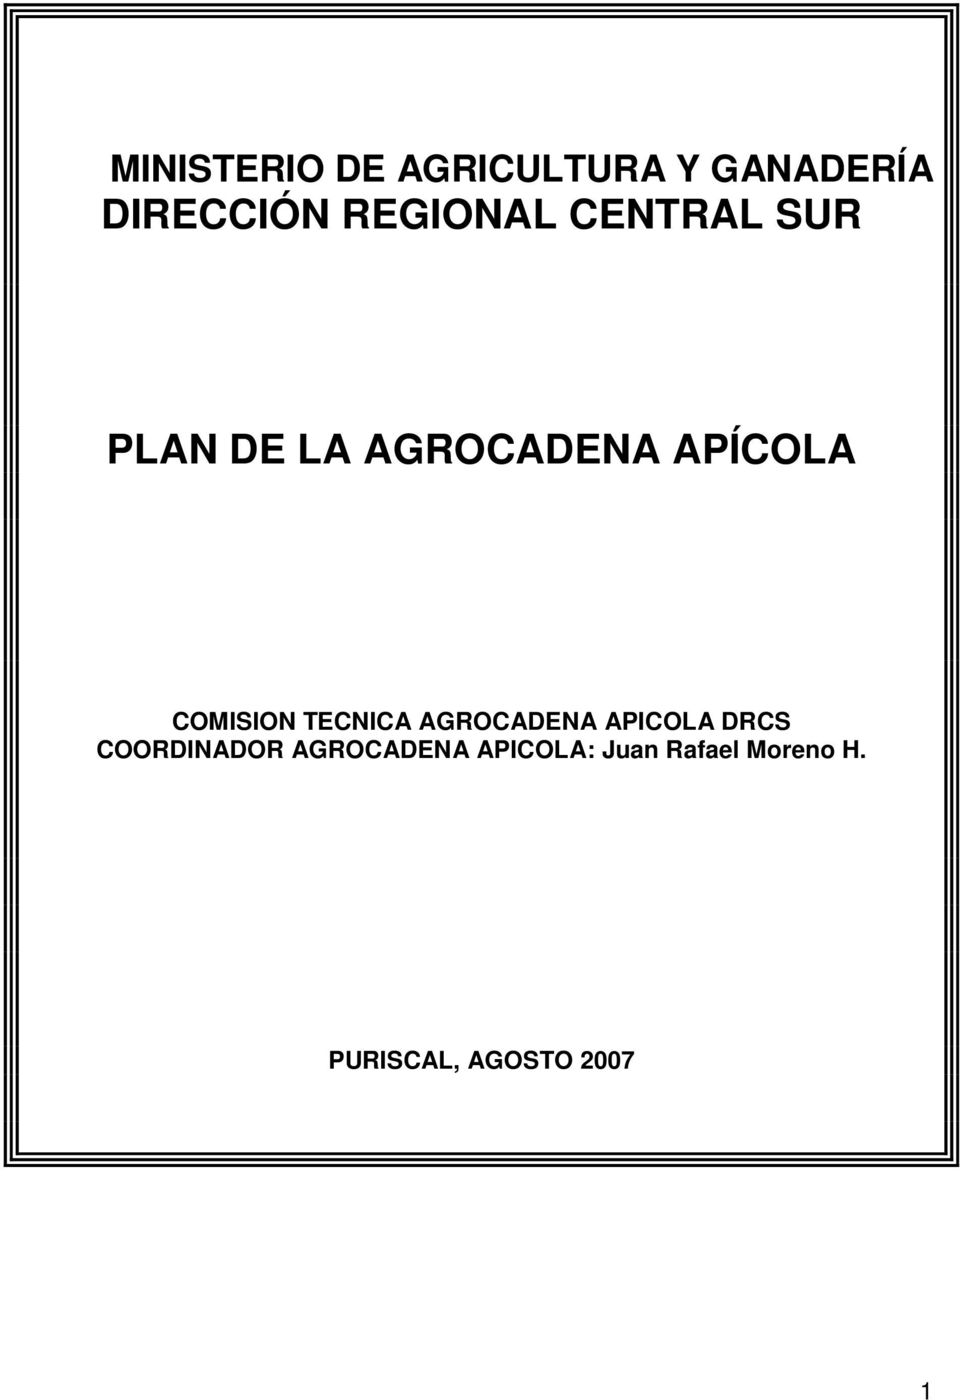 COMISION TECNICA AGROCADENA APICOLA DRCS COORDINADOR